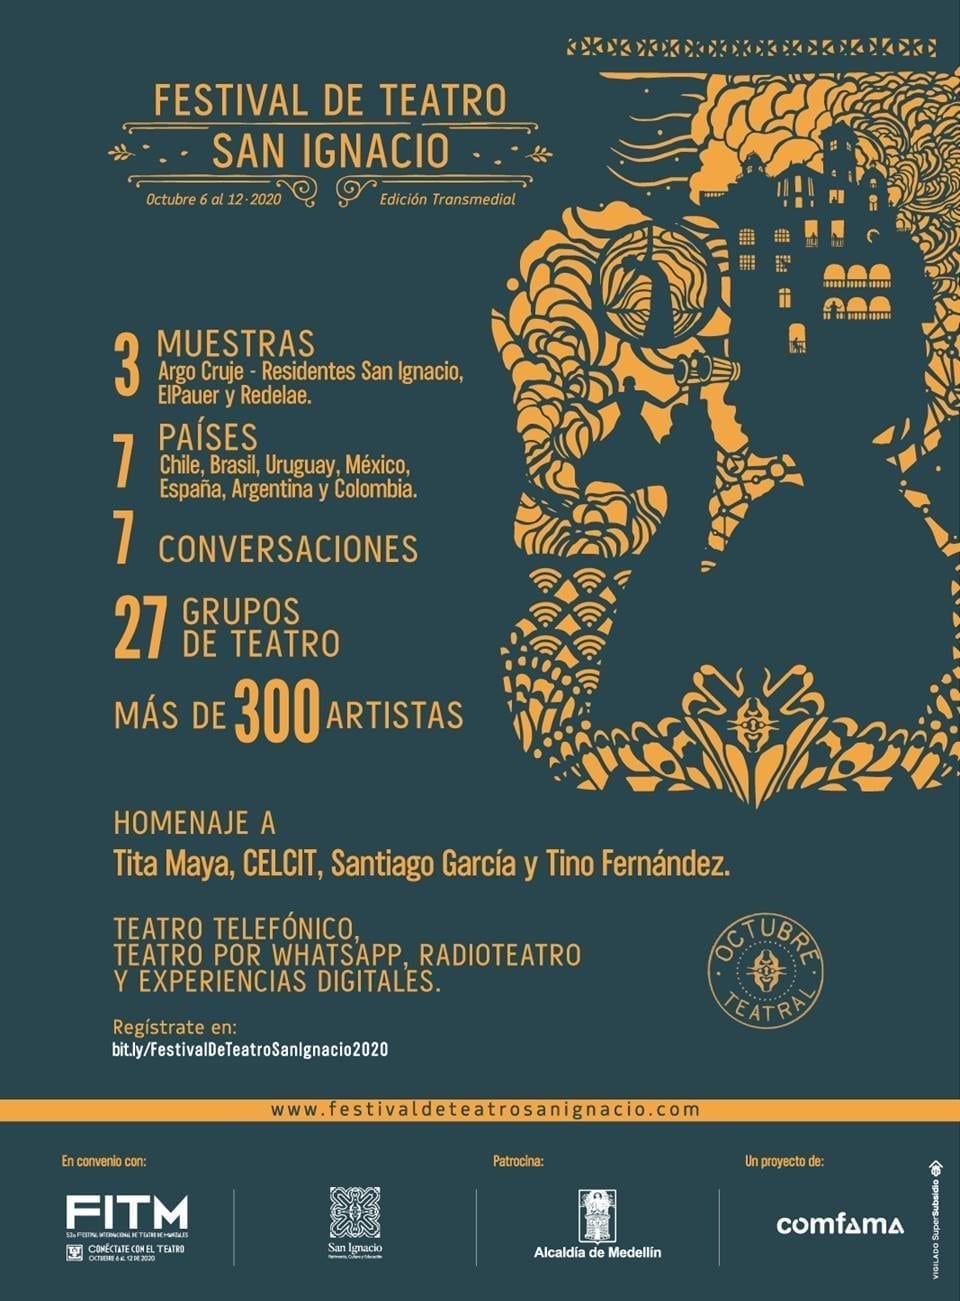 Comfama invita a disfrutar del Festival de Teatro San Ignacio